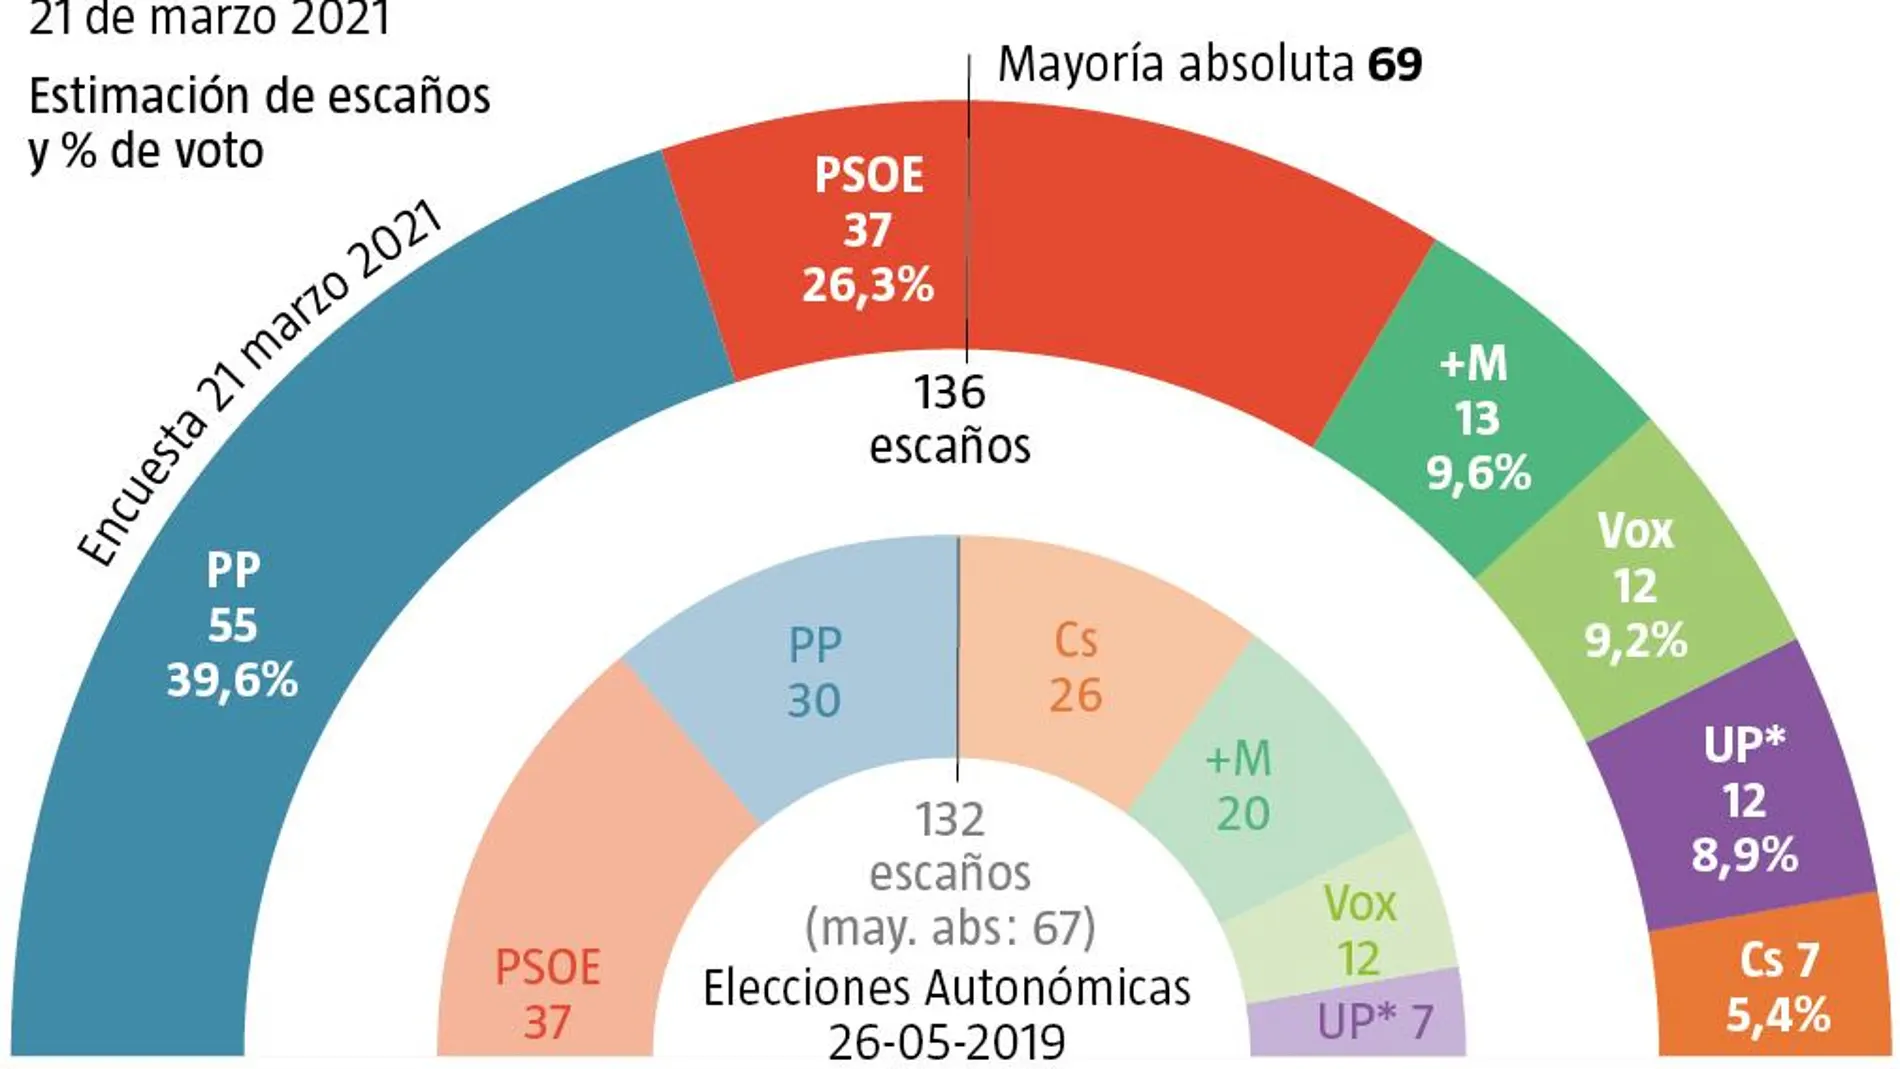 Encuesta electoral Madrid, 21 de marzo 2021